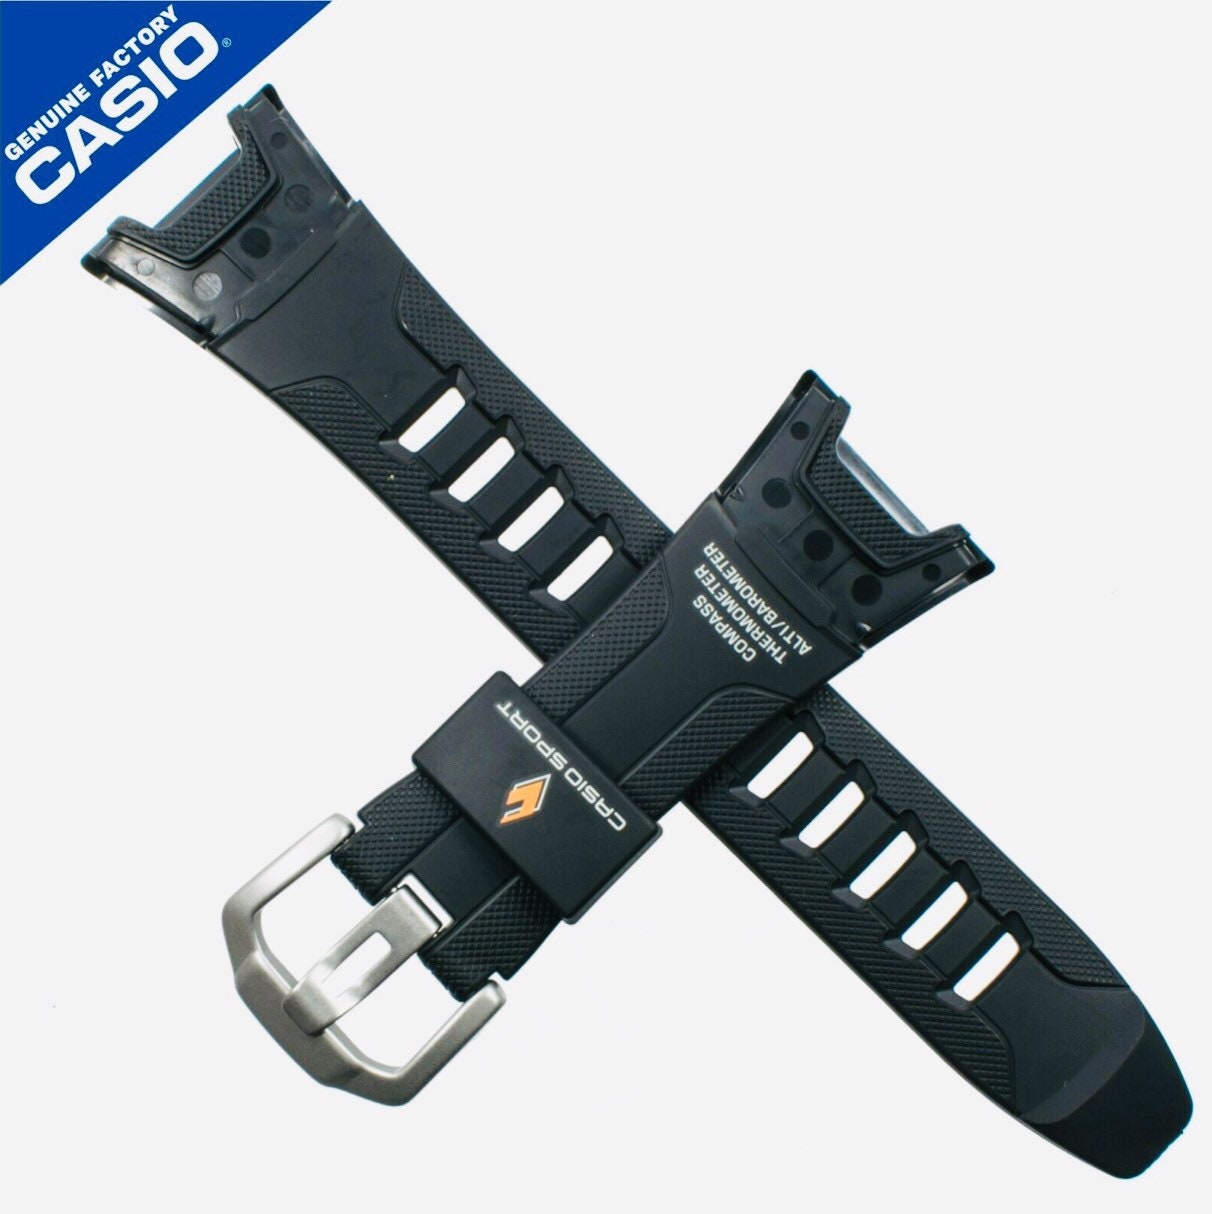 Registrering hvad som helst Resultat Genuine Casio Watch Band Pathfinder Paw1300 Paw1300y Paw-110 | Etsy